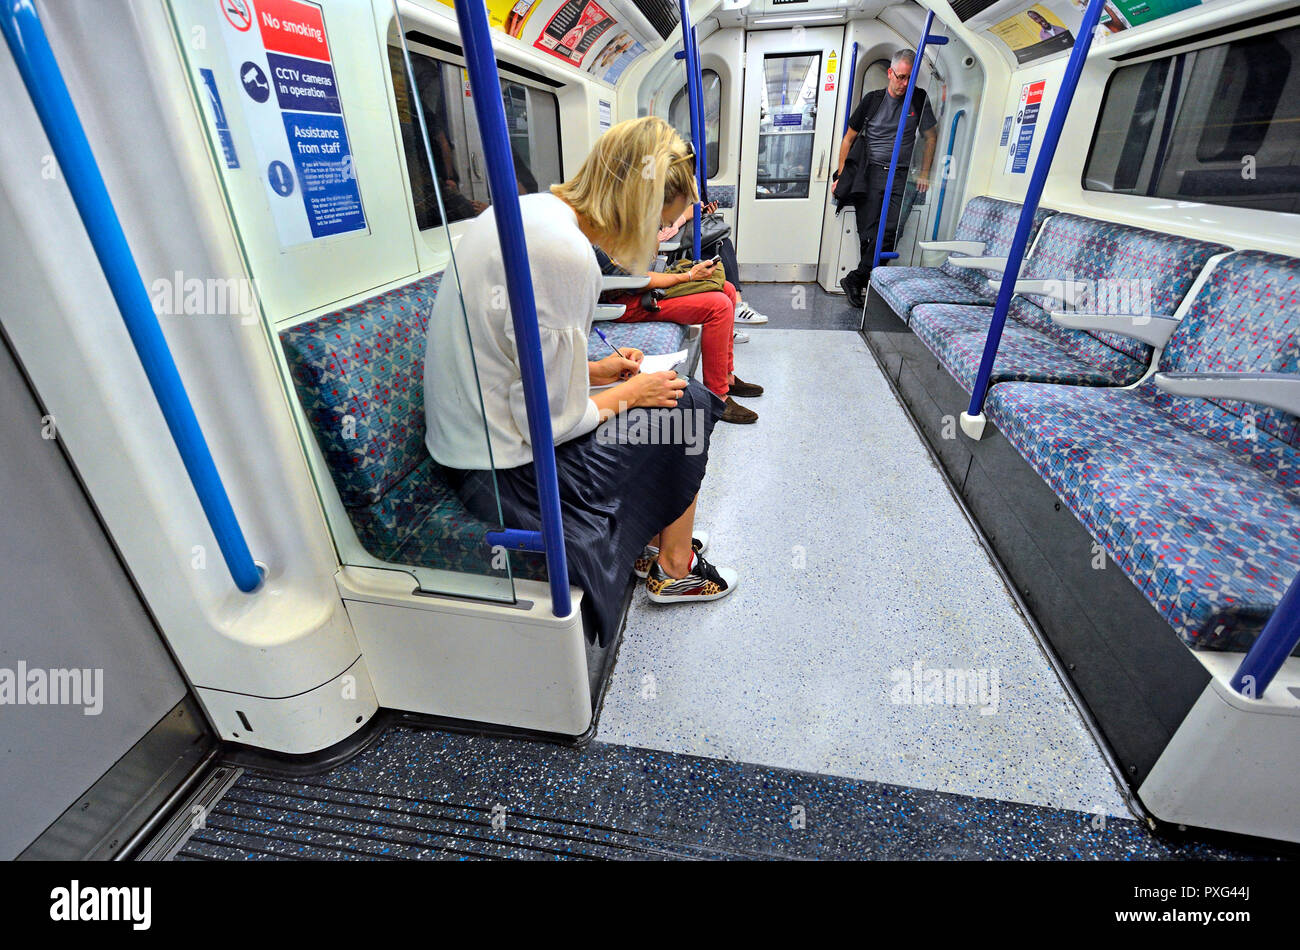 Frau Kennzeichnung arbeiten an einer U-Bahn, London, England, UK. Stockfoto